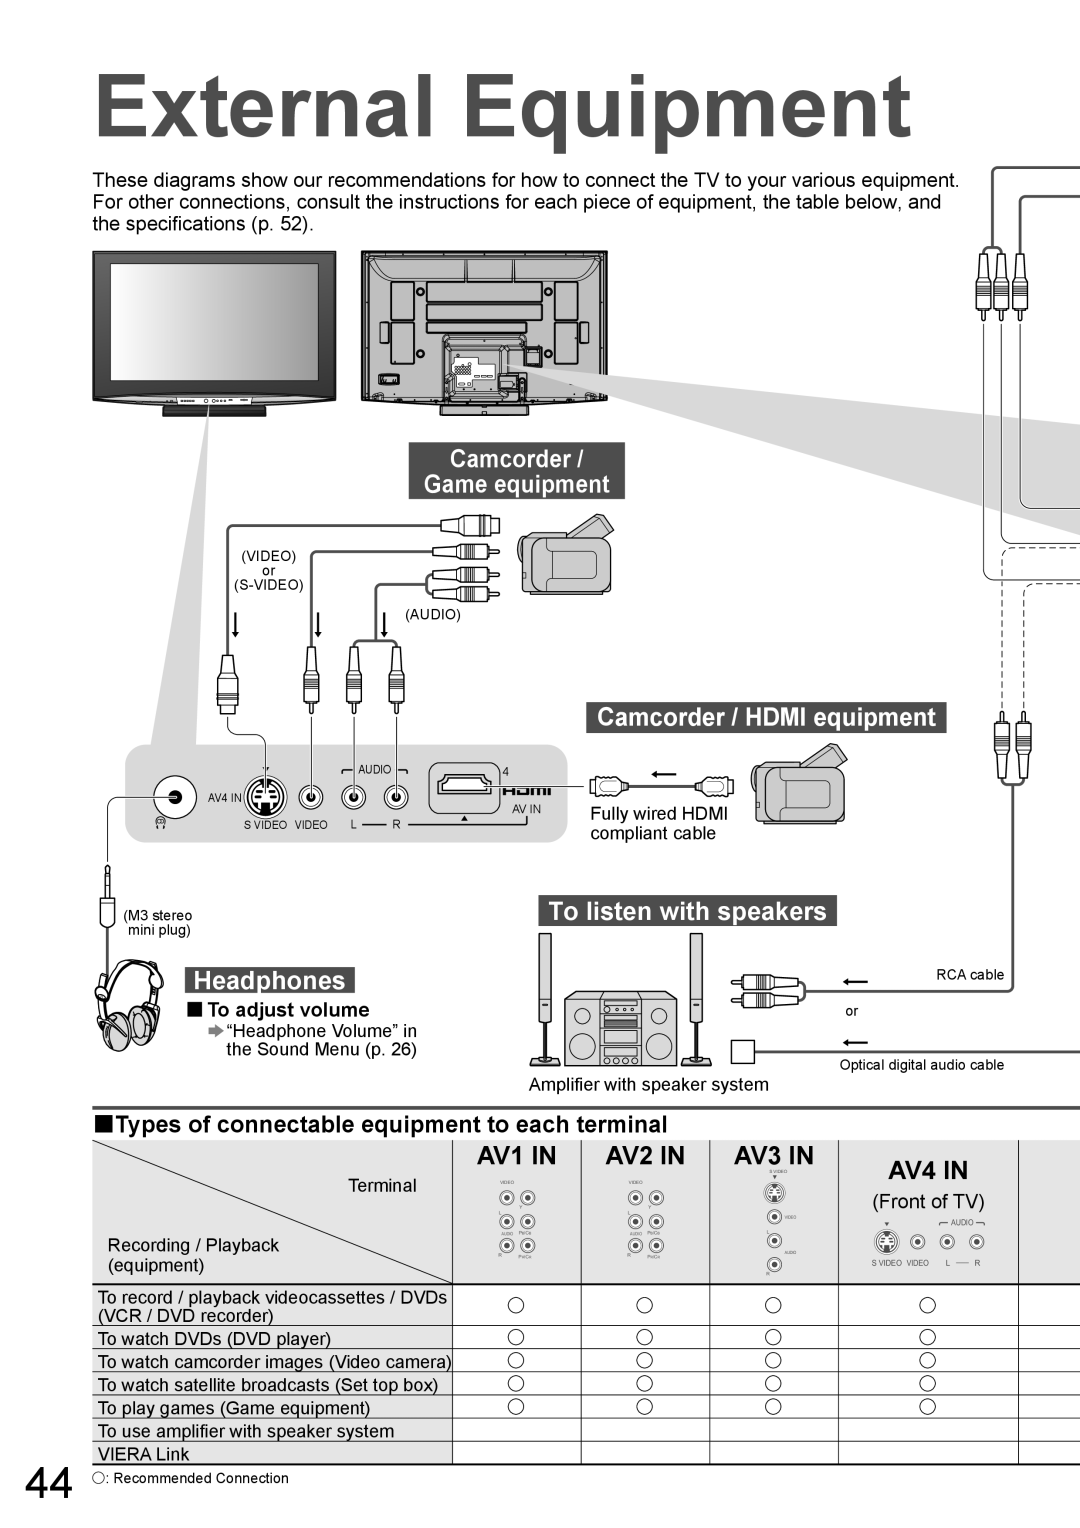 Panasonic TH-50PZ850AZ External Equipment, AV1 IN, AV2 IN, Camcorder / HDMI equipment, AV4 IN, To adjust volume, Terminal 